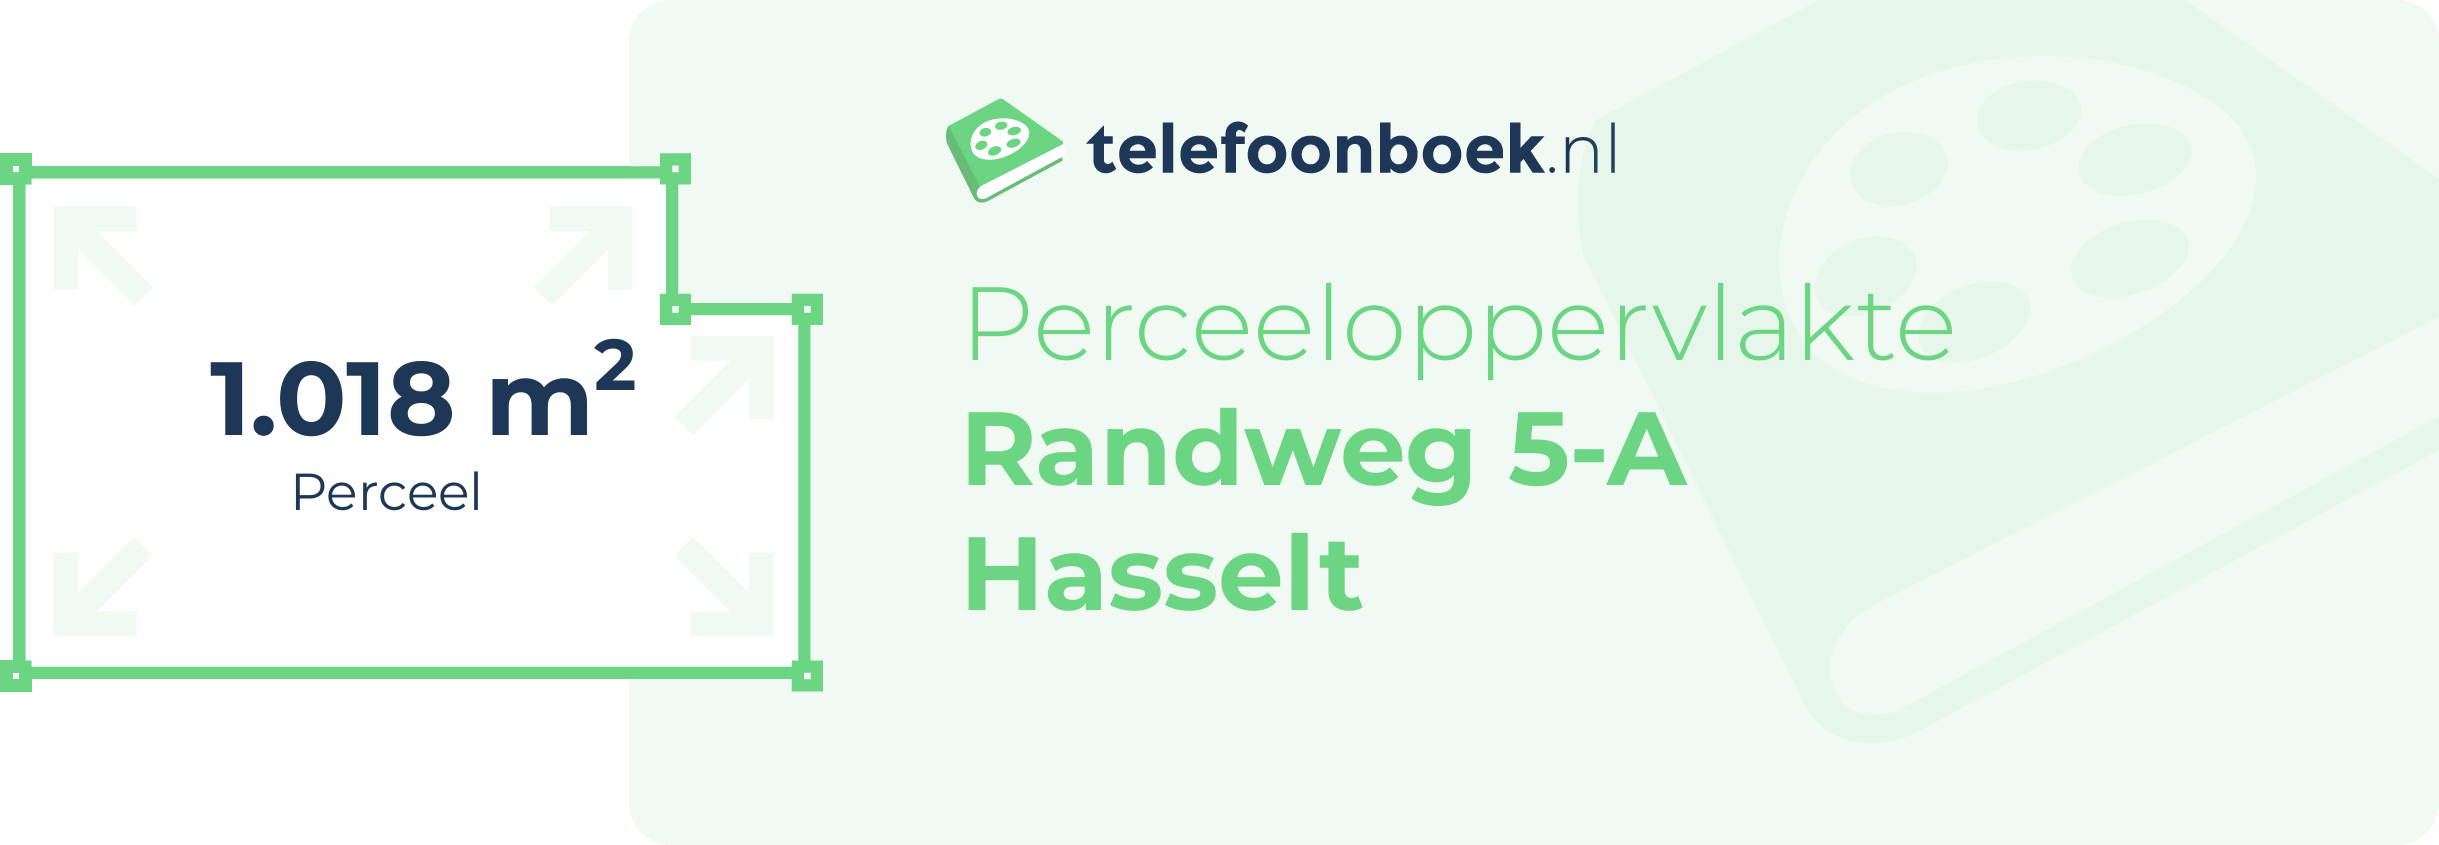 Perceeloppervlakte Randweg 5-A Hasselt